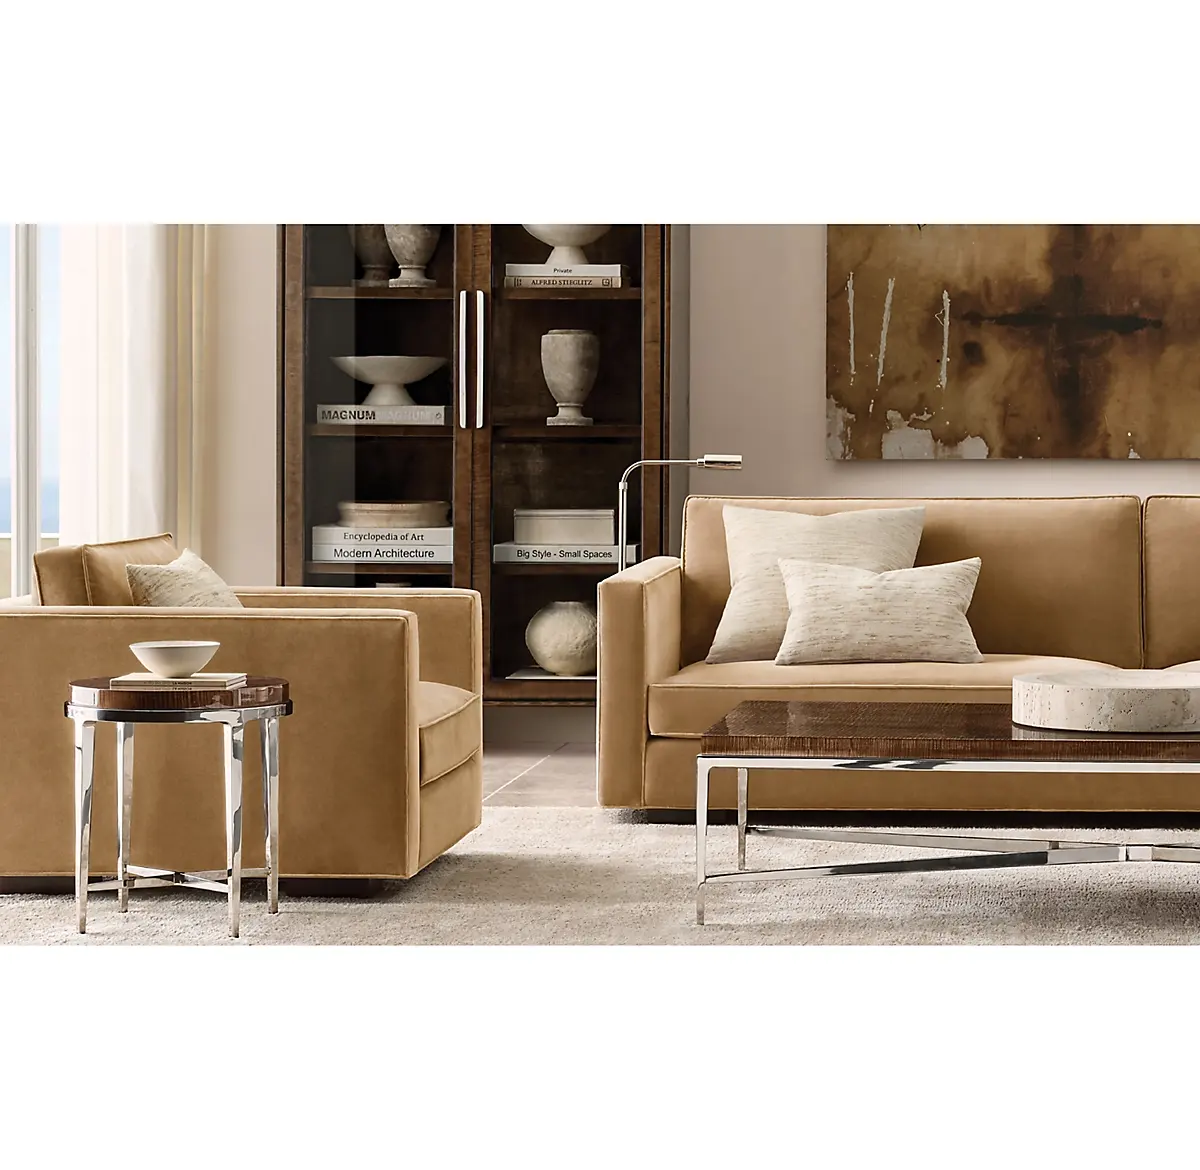 Konsole-silla clásica de diseño europeo de alta calidad, cómoda y lujosa, Maddox, brazo Delgado, otomana, muebles para el hogar y la sala de estar